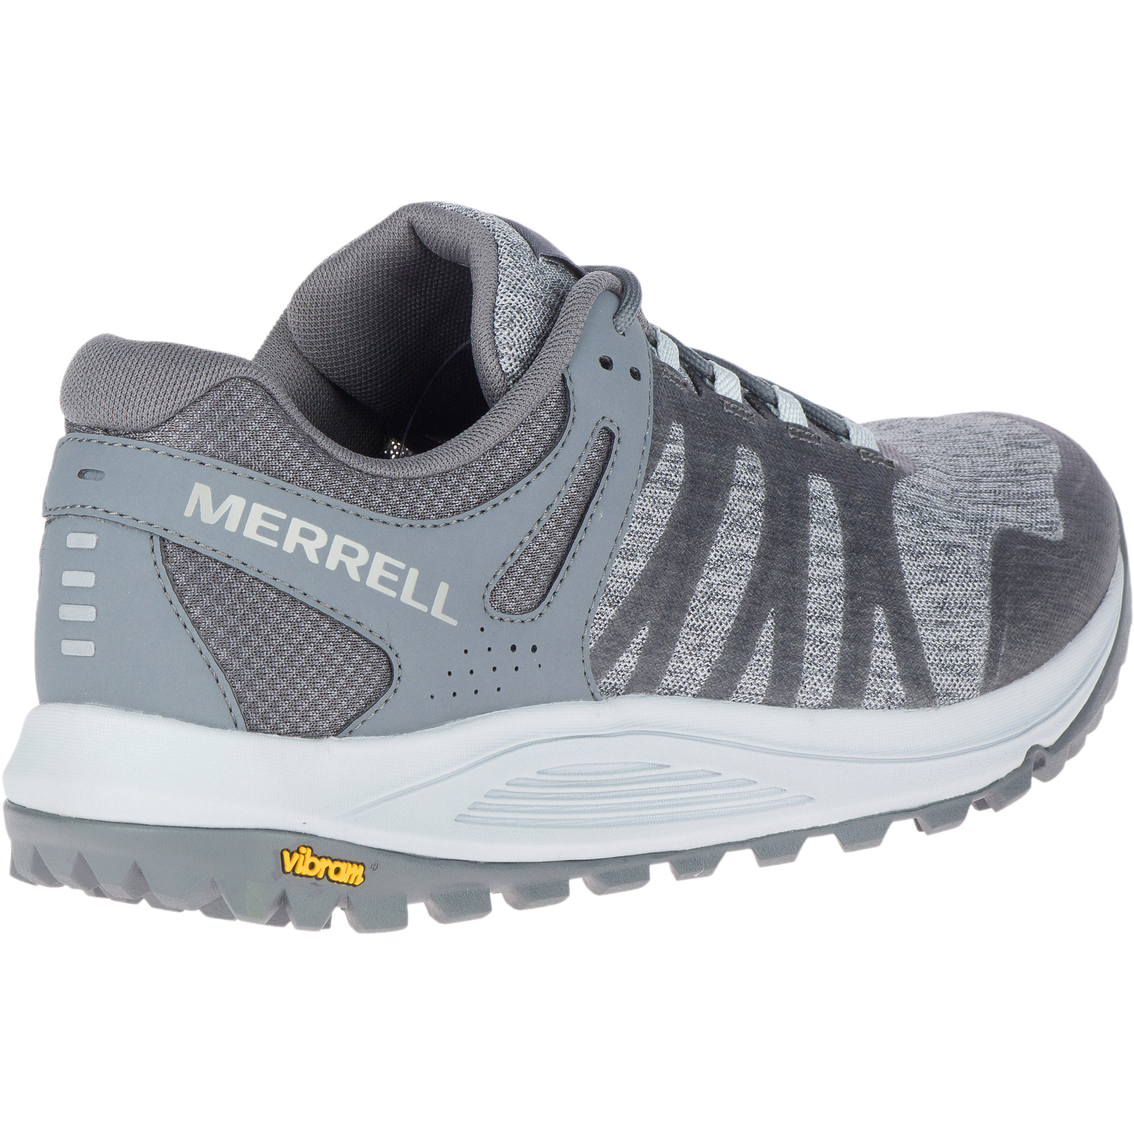 Merrell Men's Nova High Rise Trail Runner Shoes - Image 10 of 10